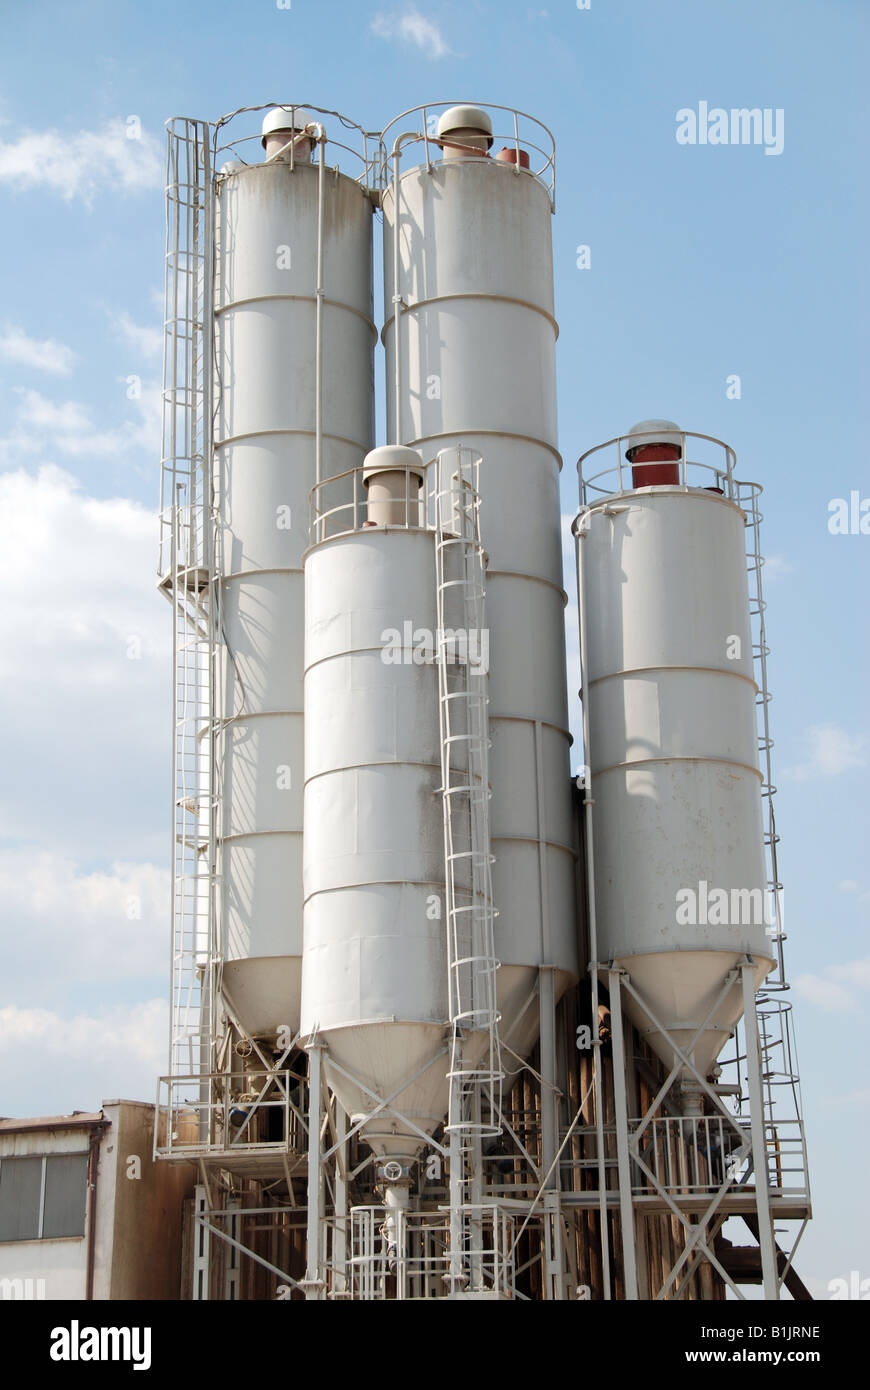 silo in poland Stock Photo - Alamy